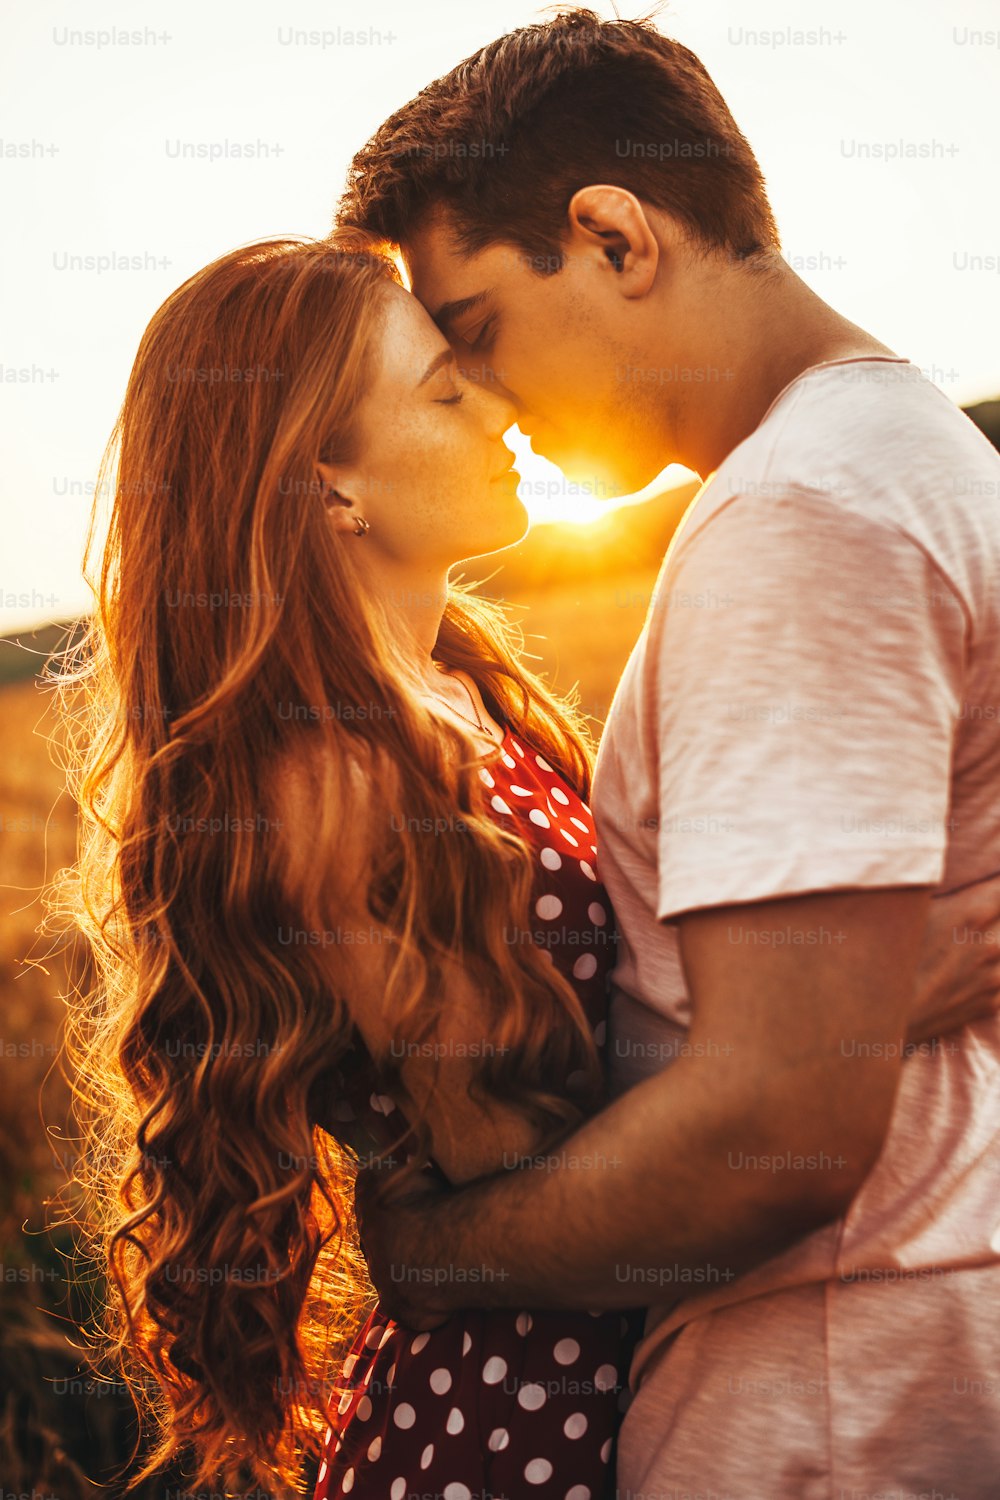 Vista lateral de uma mulher com longos cabelos ruivos beijando seu marido em uma reunião ao ar livre. Posando contra o fundo brilhante